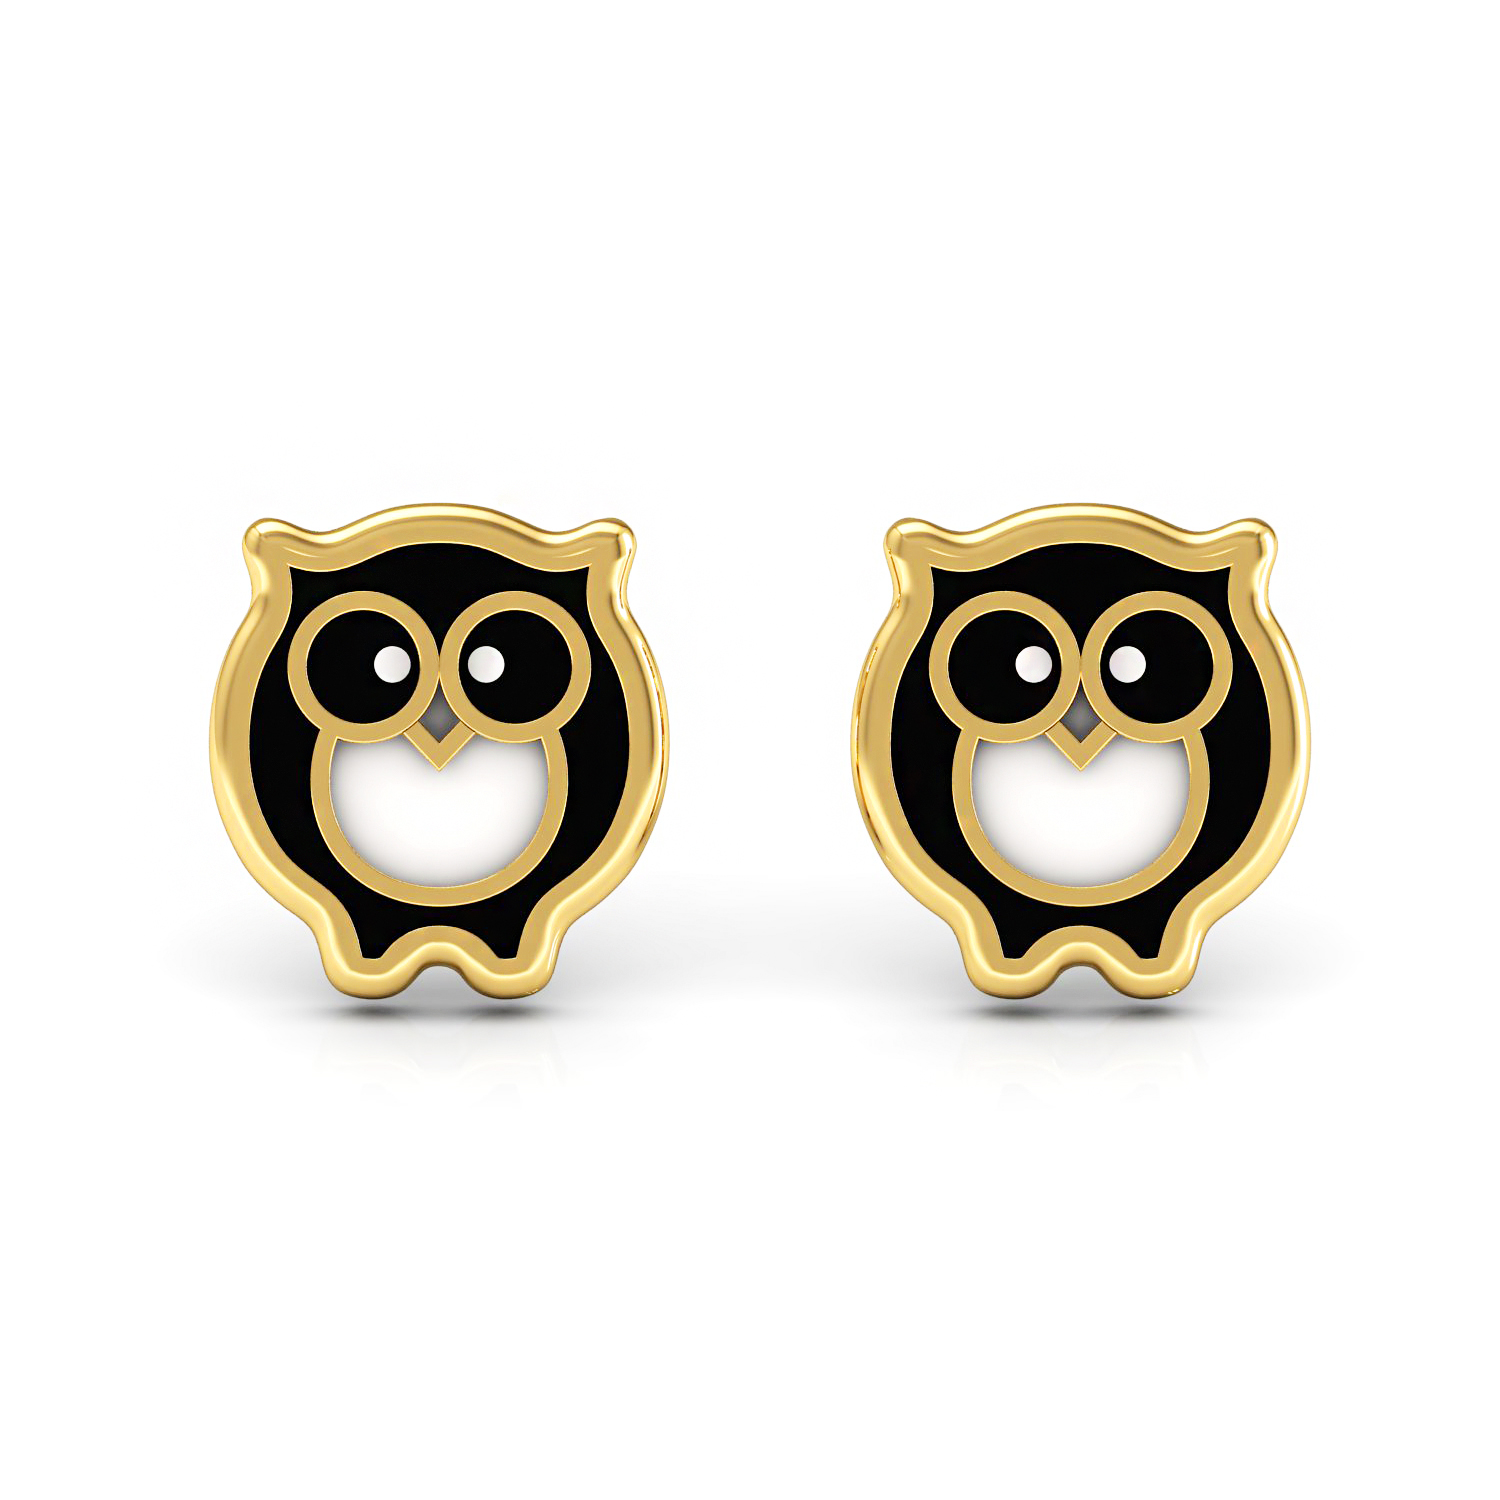 Solid gold enamel owl shape kids stud earrings